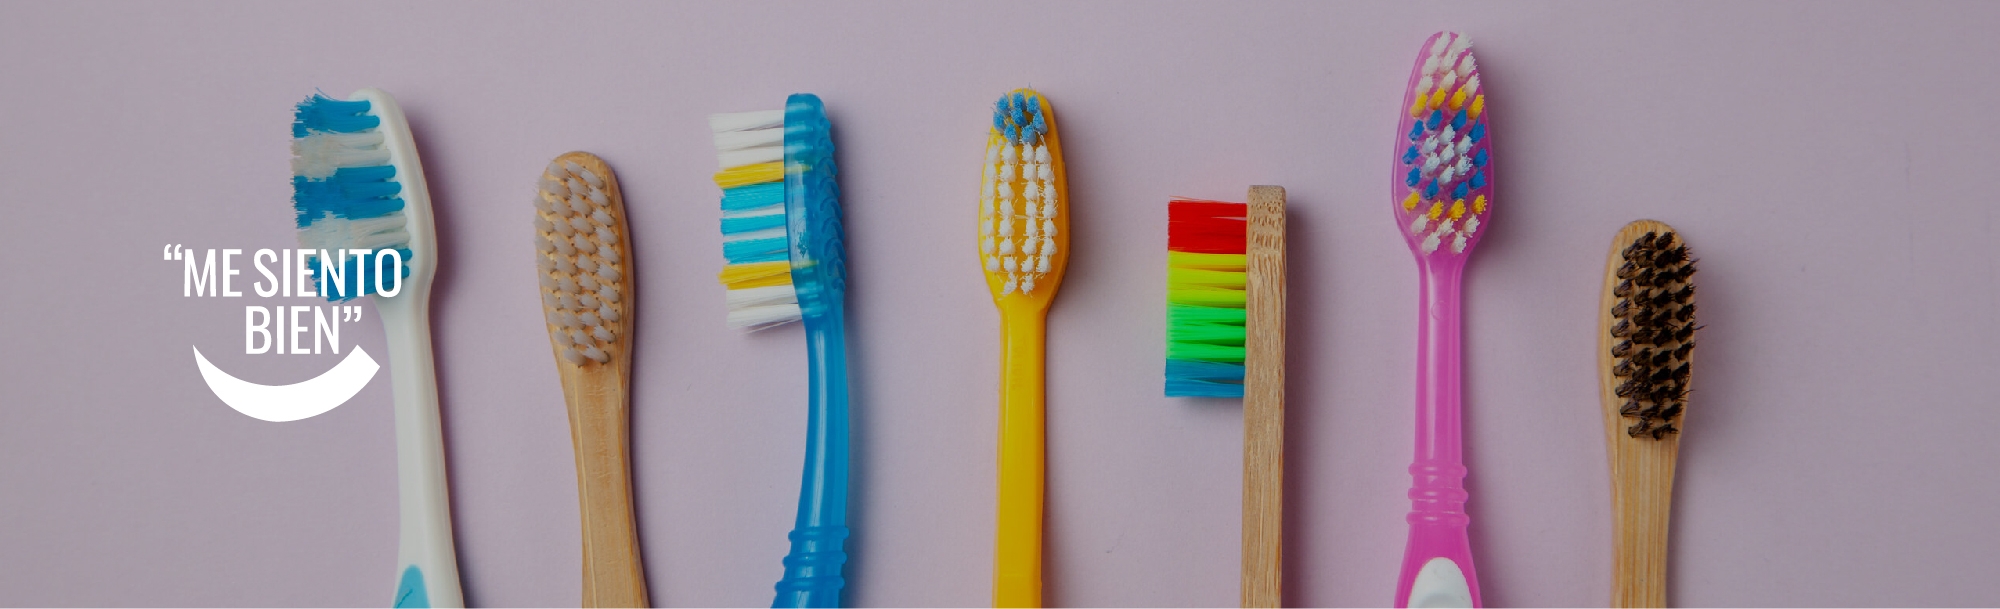 Higiene y salud bucal: ¿Cómo elegir un cepillo adecuado?